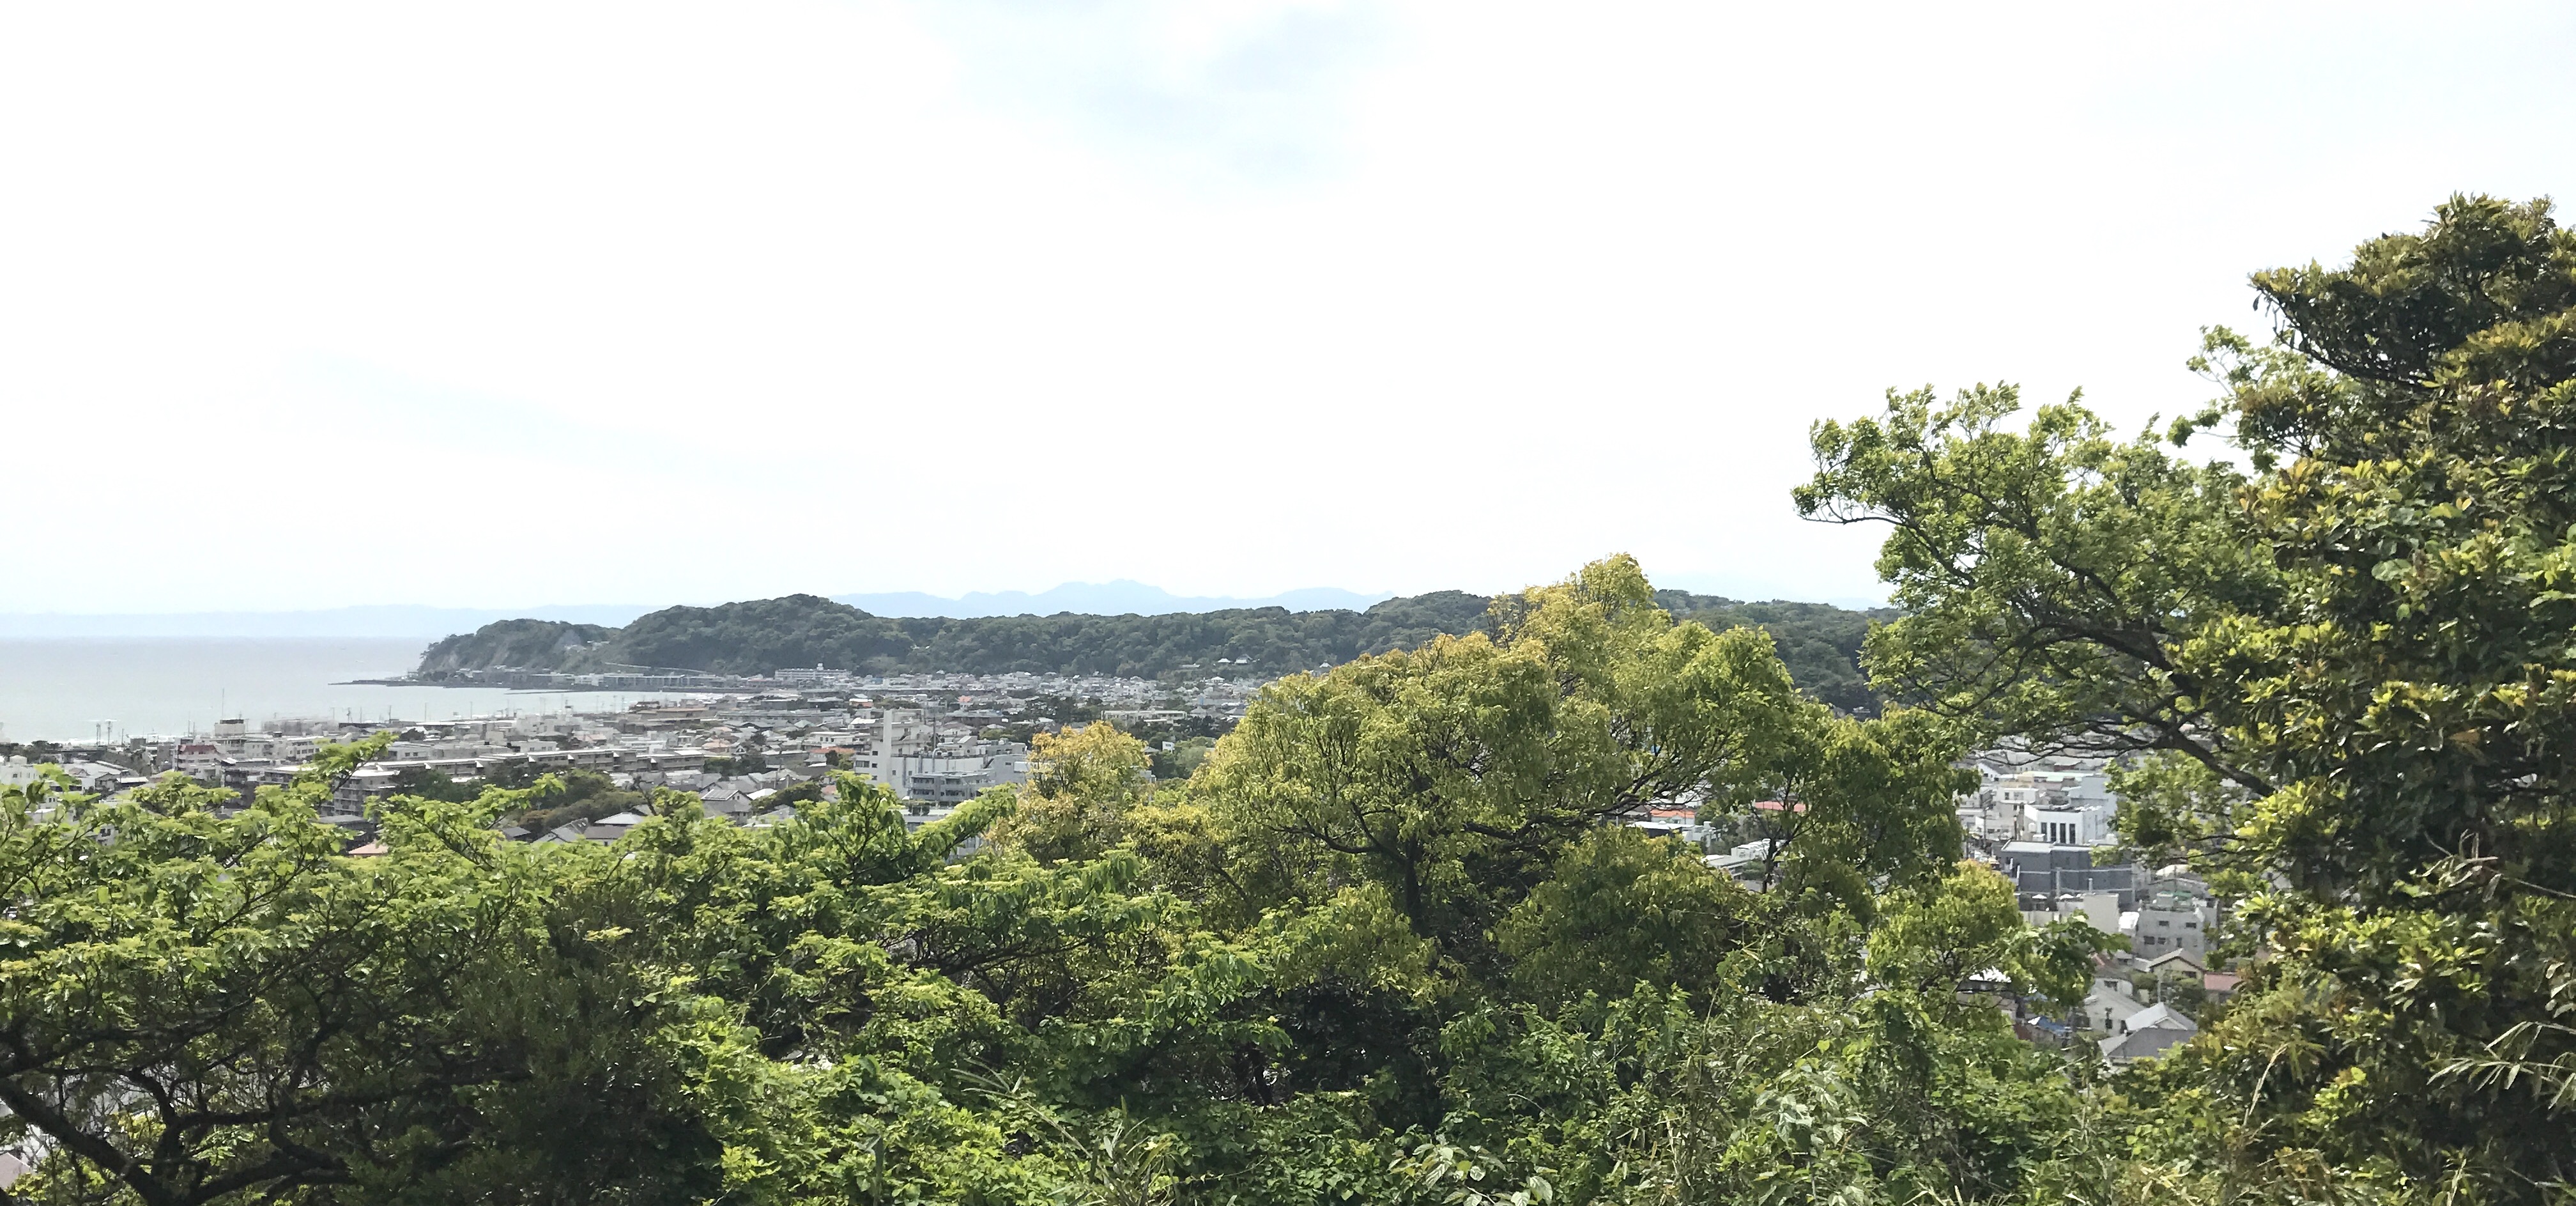 祇園山ハイキングコース